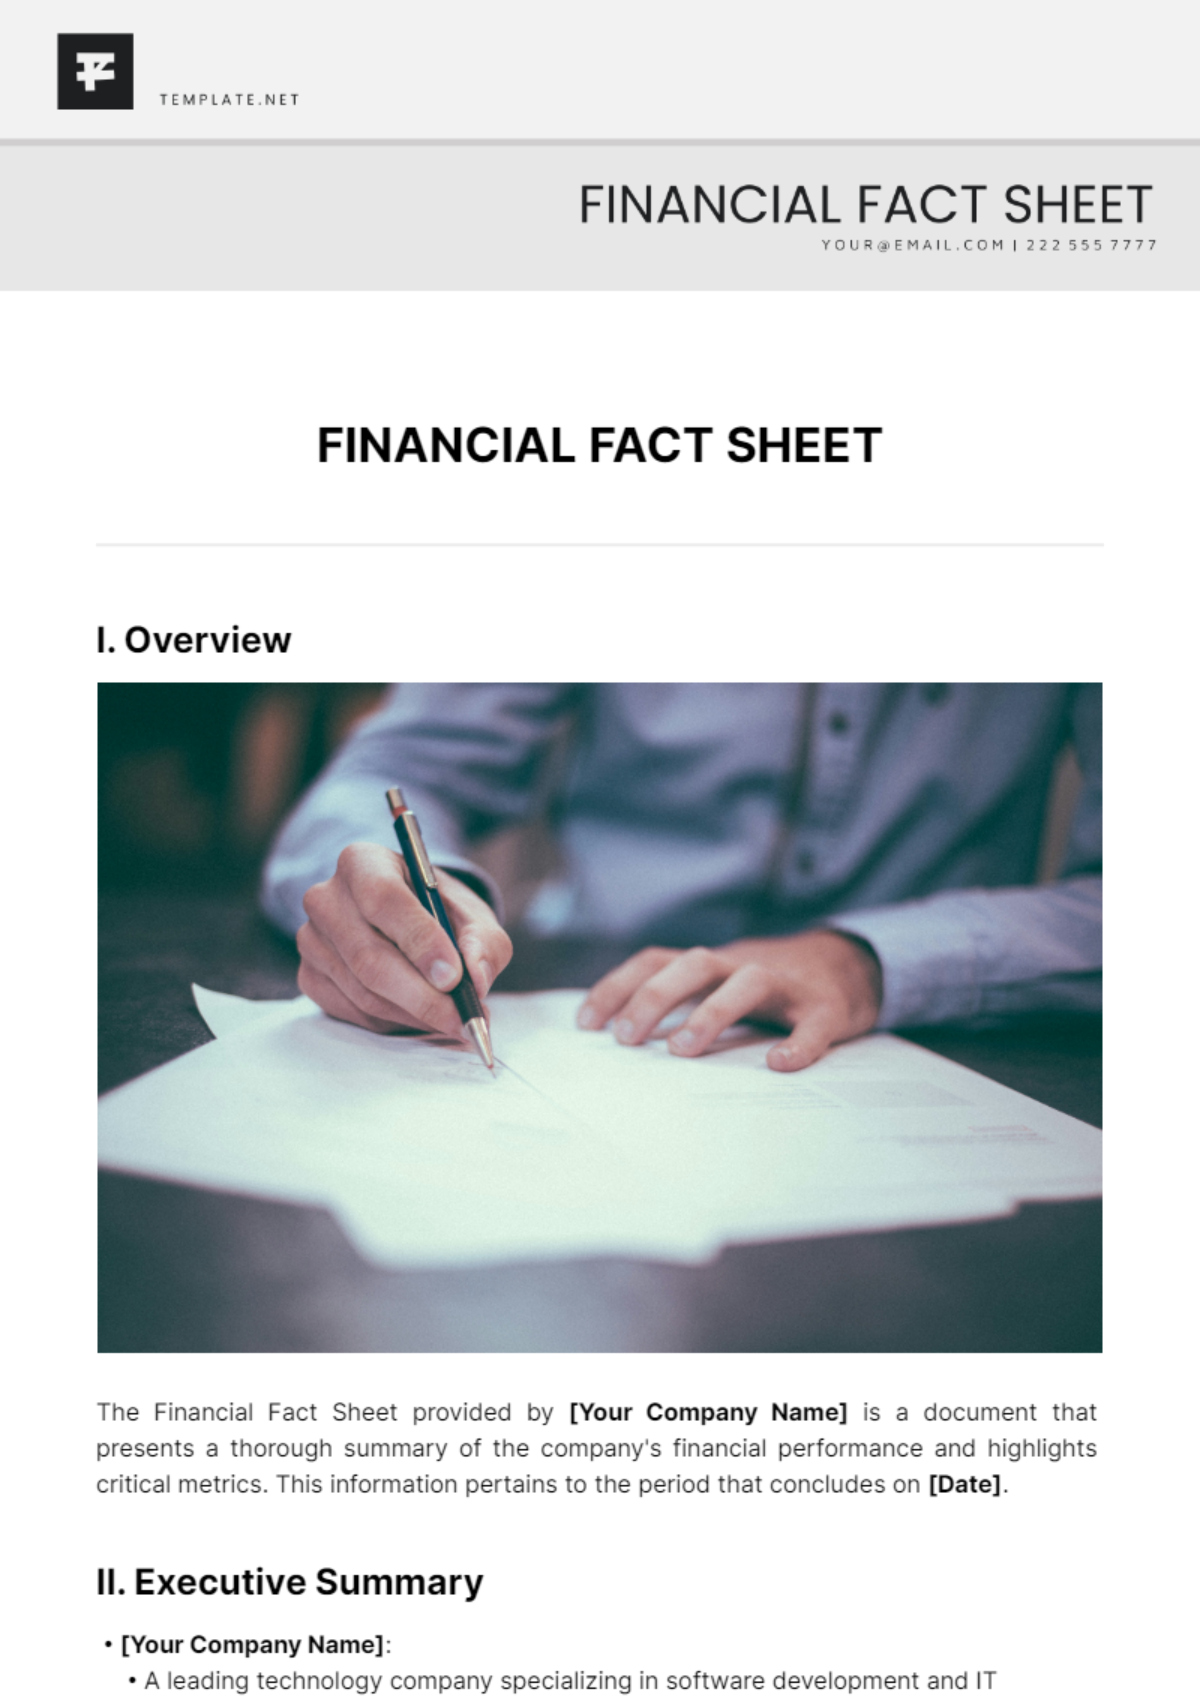 Financial Fact Sheet Template